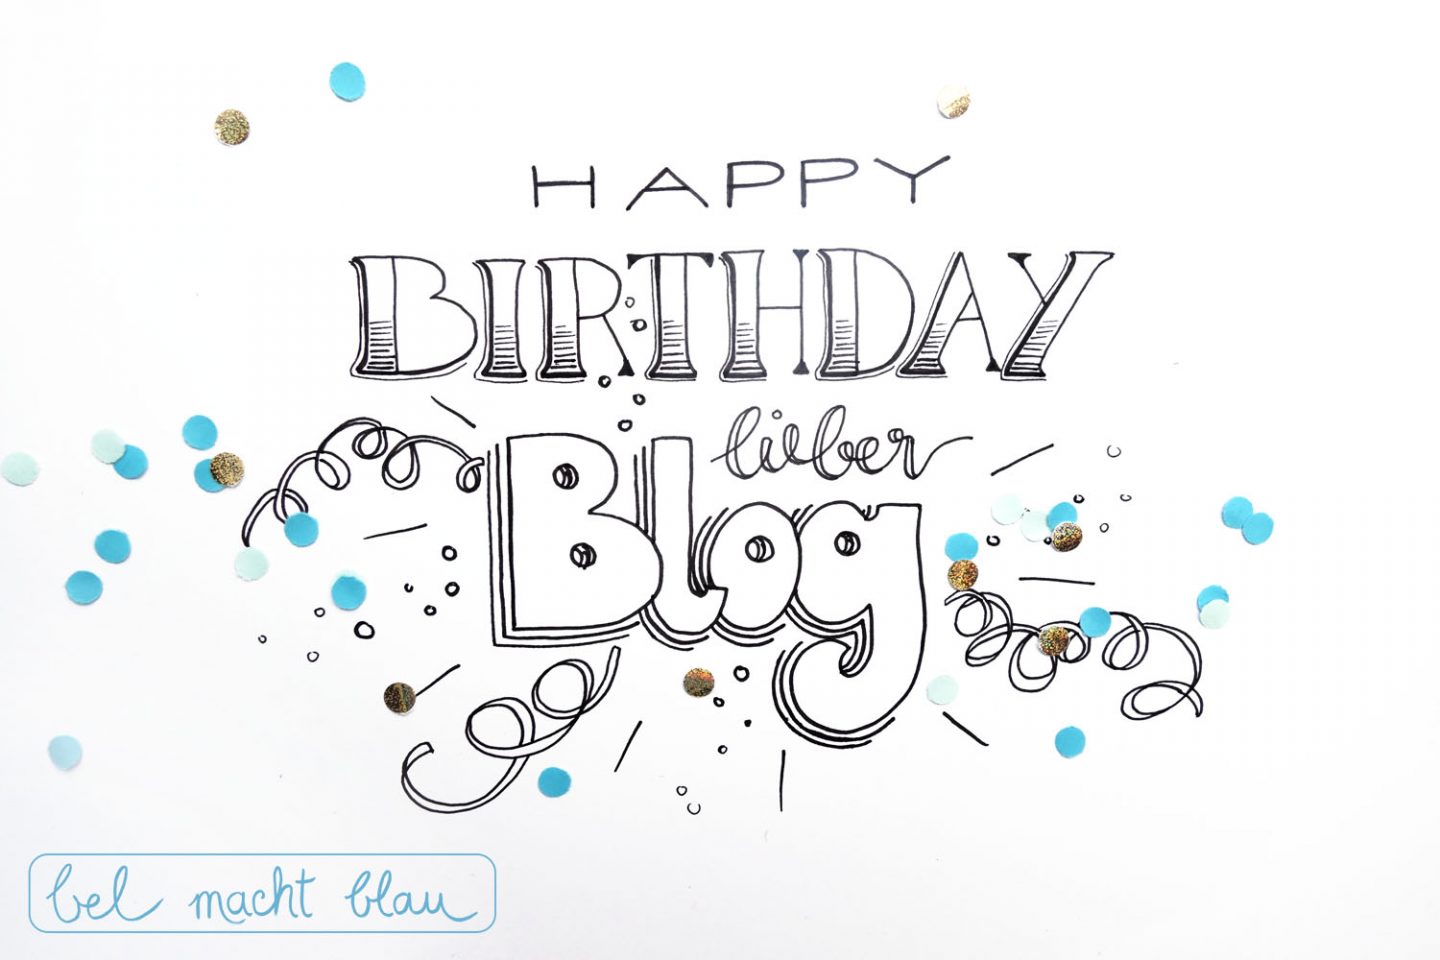 Happy Birthday lieber Blog - bel macht blau wird 2! Bloggeburtstag